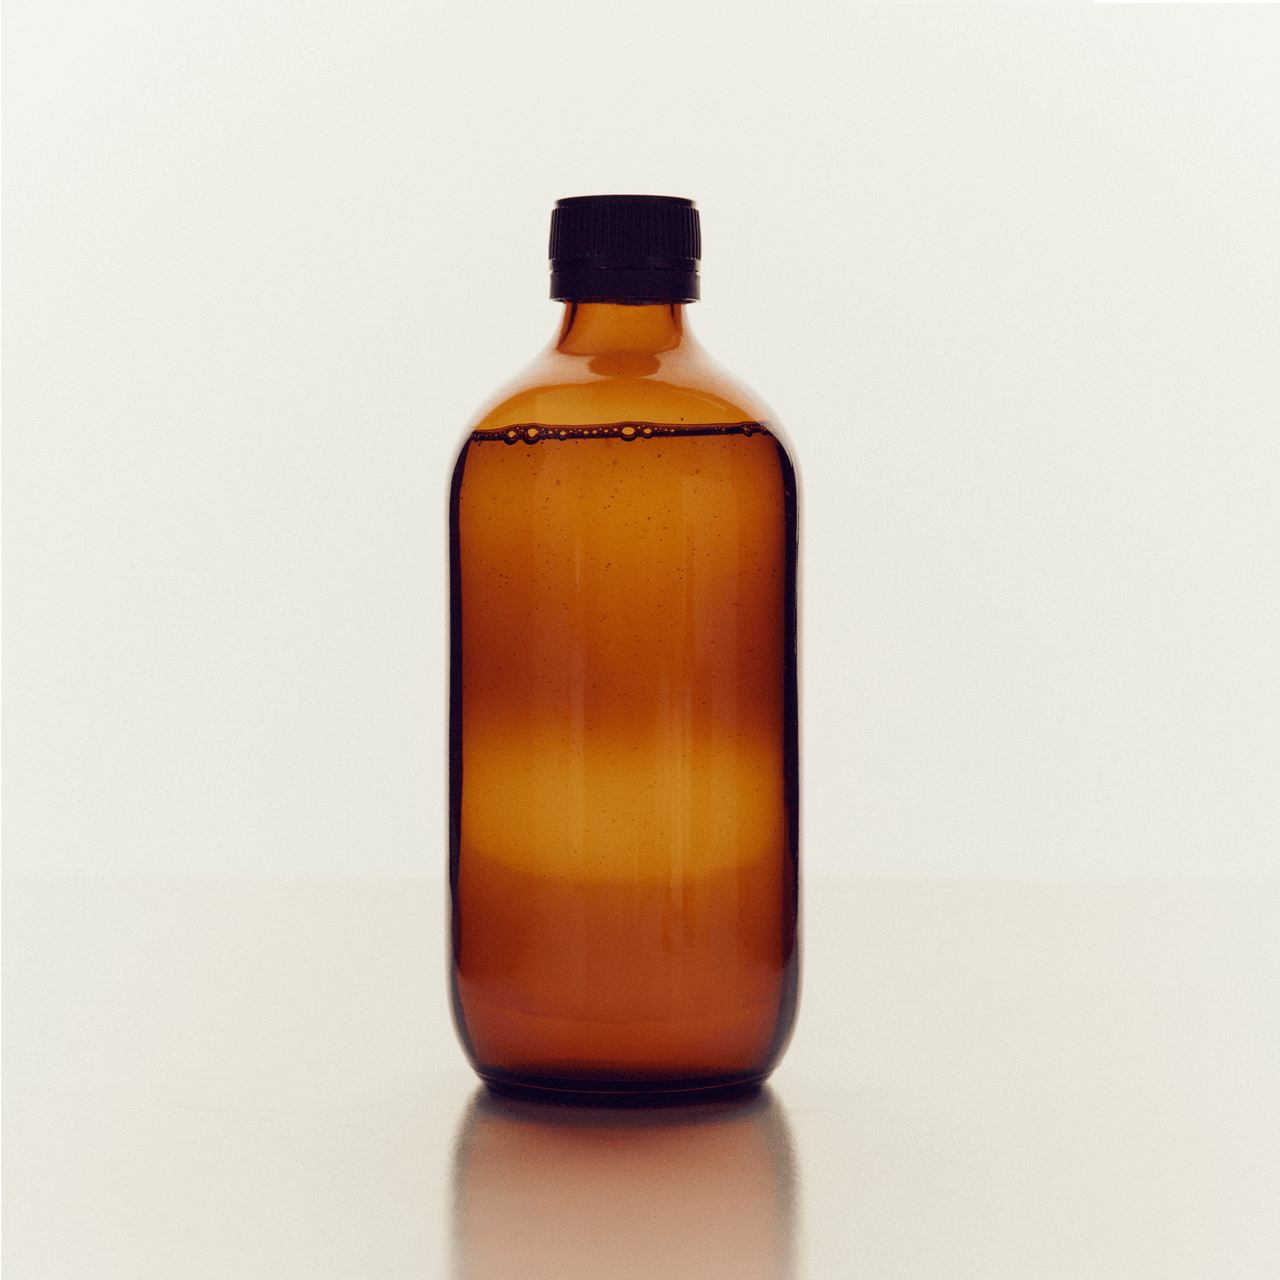 Black Sesame Oil 50ml Amber glass bottle